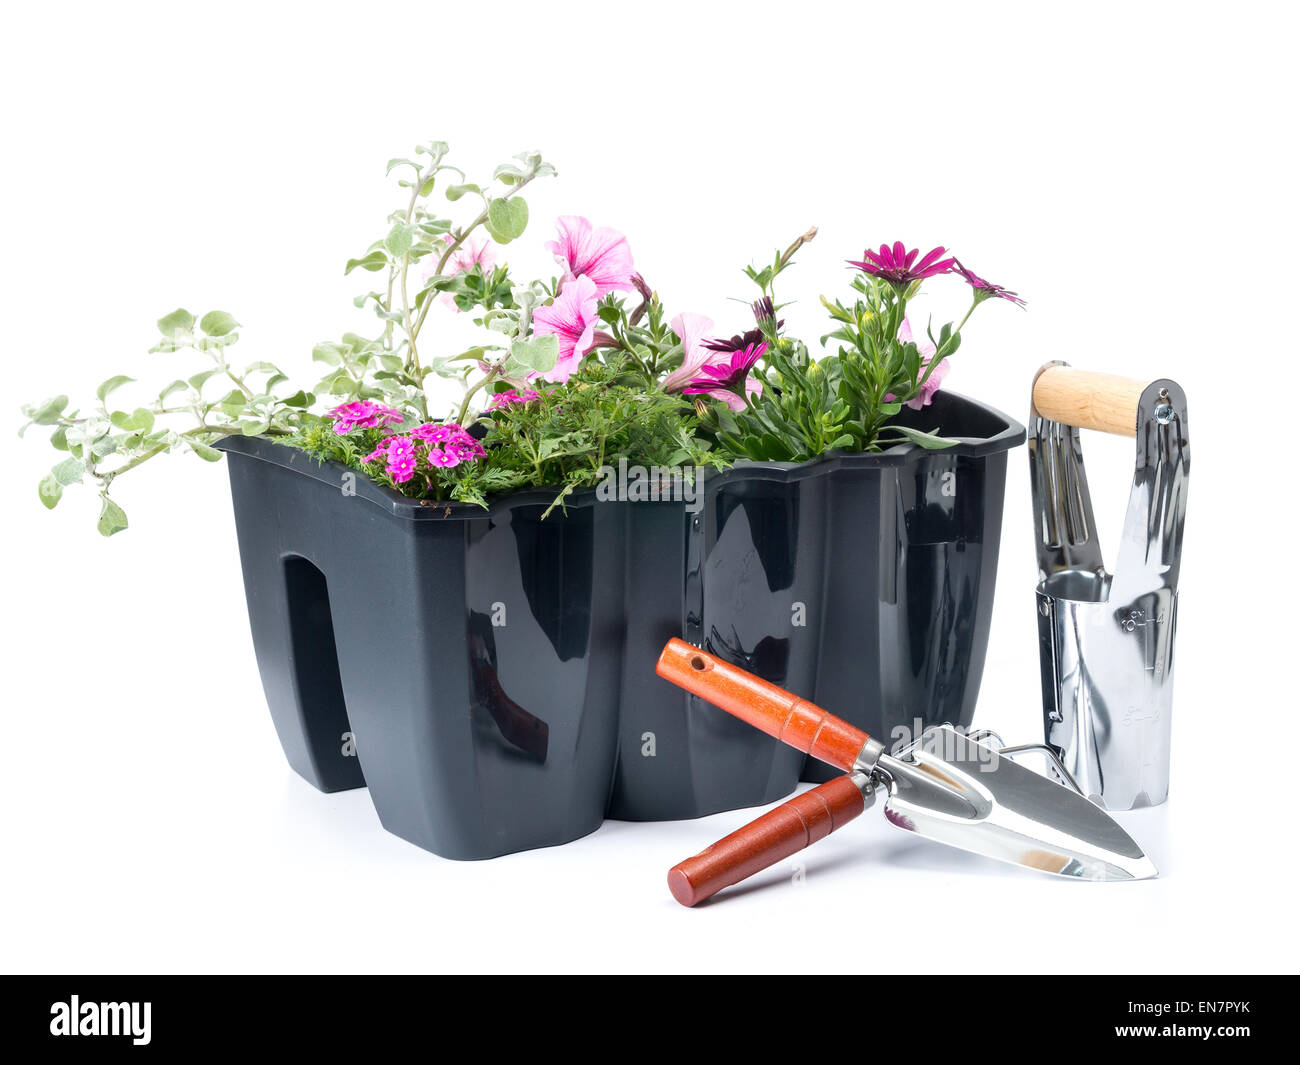 Fiore di plastica scatola con fiori freschi e del giardinaggio utensili a mano shot su sfondo bianco Foto Stock